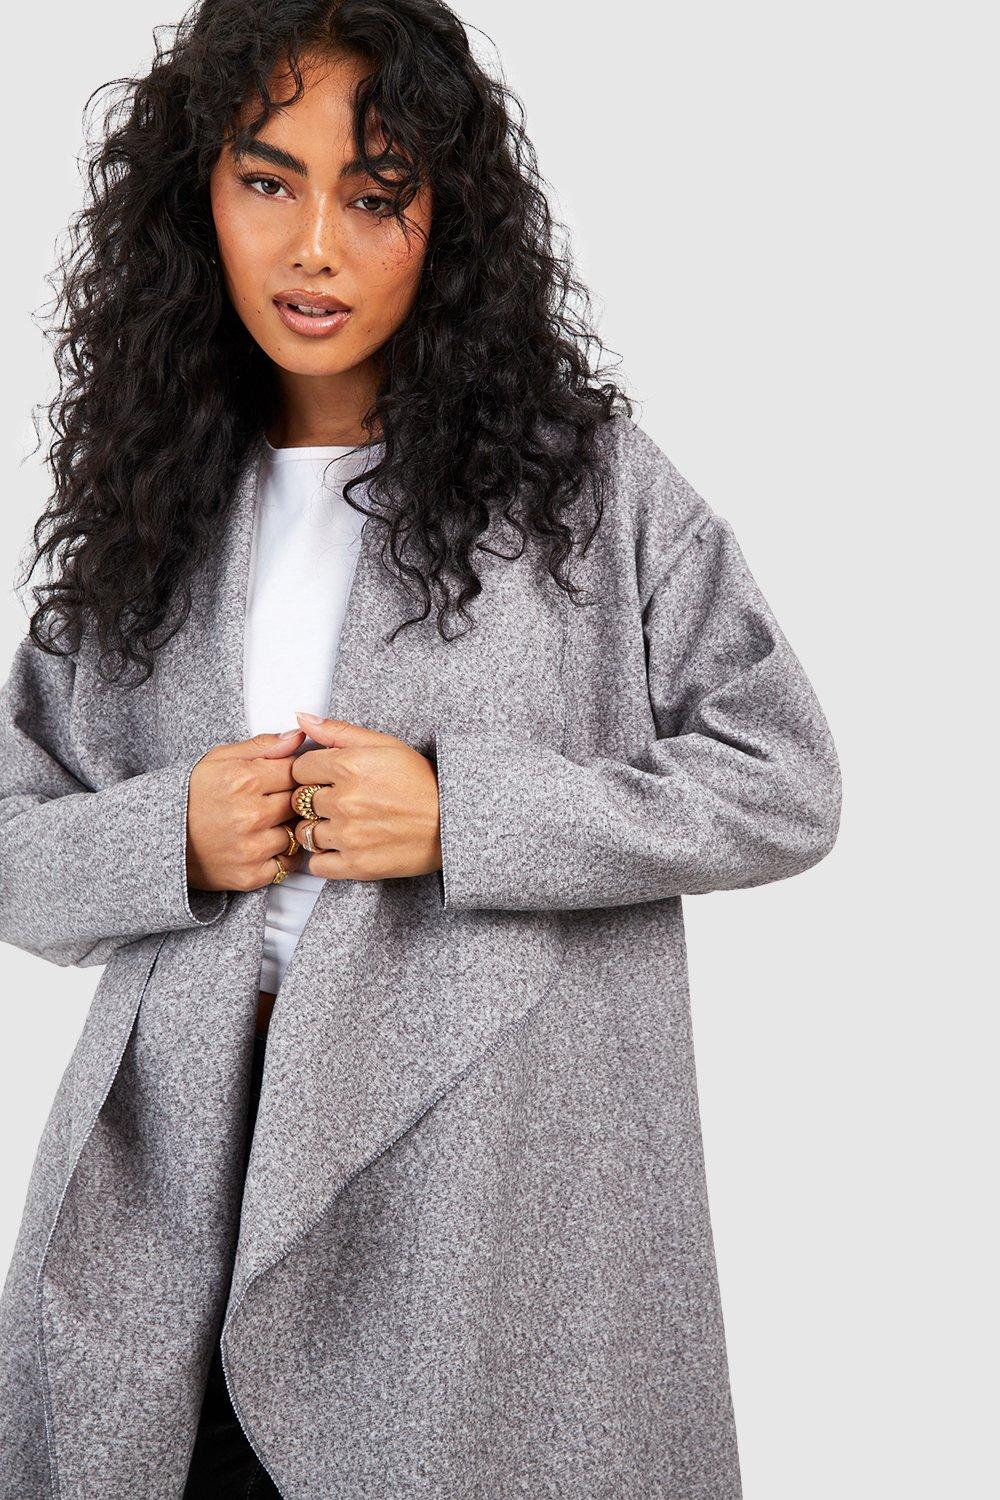 manteau laine long gris